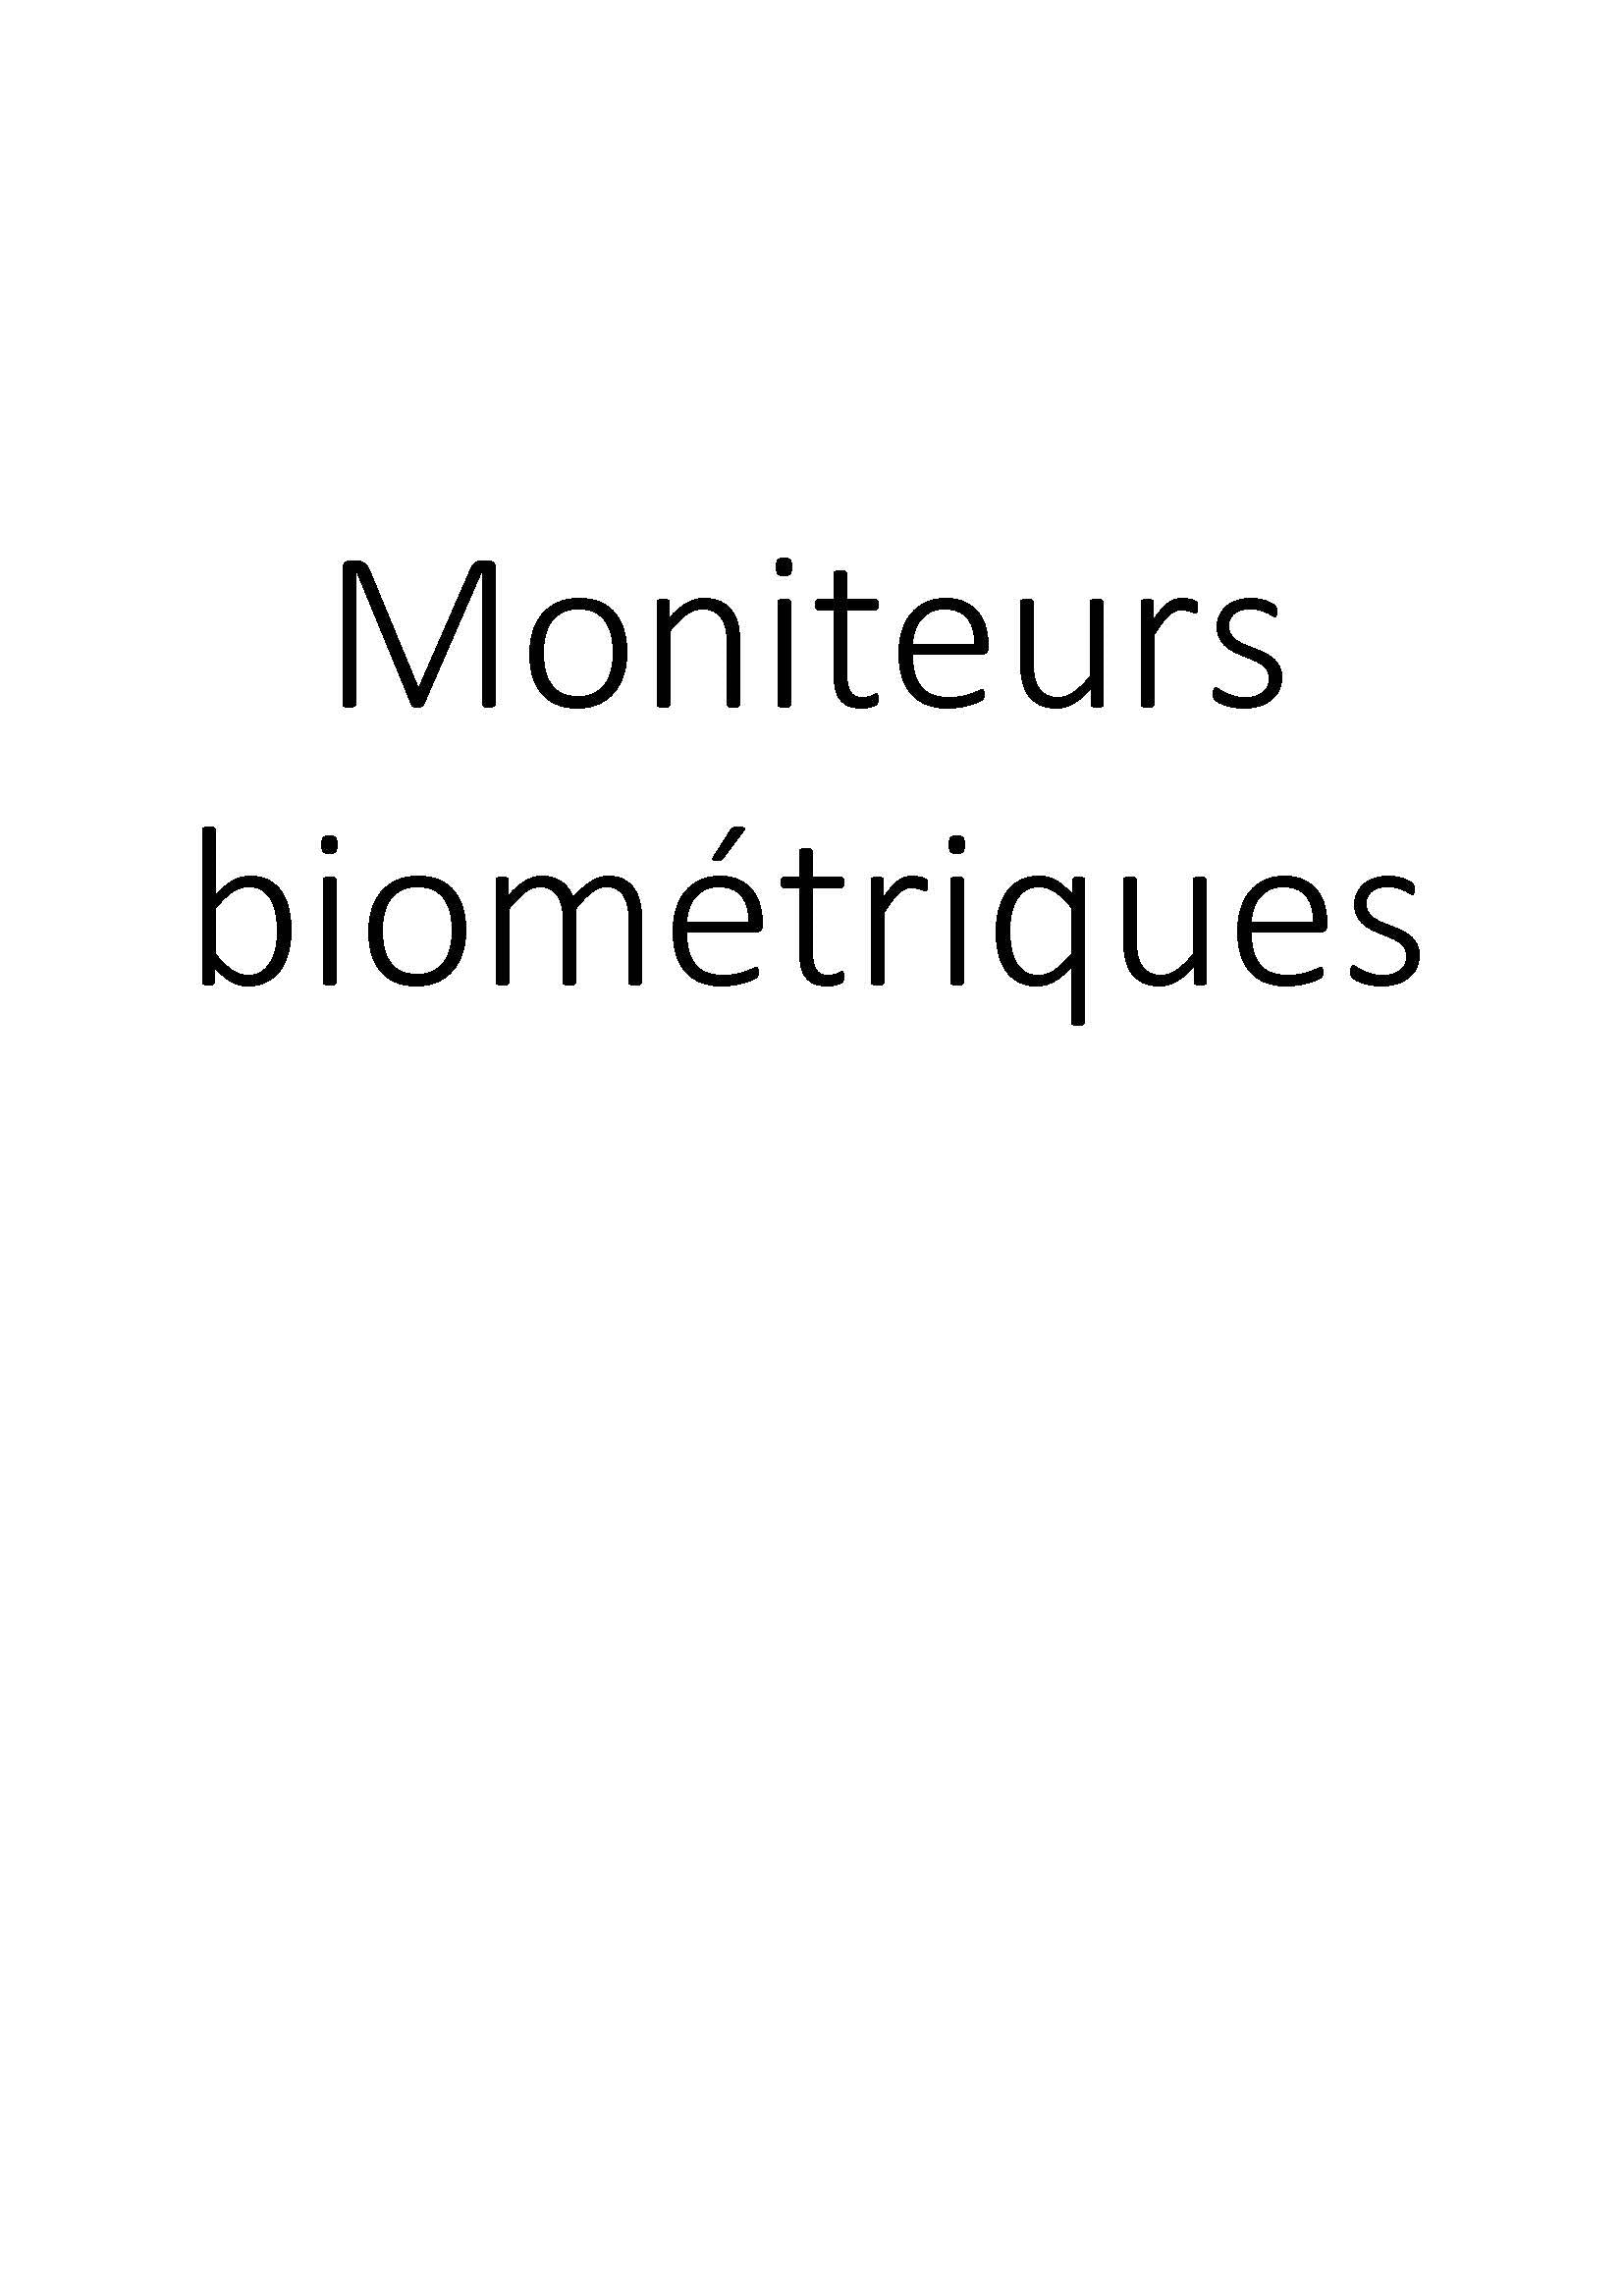 Moniteurs biométriques clicktofournisseur.com